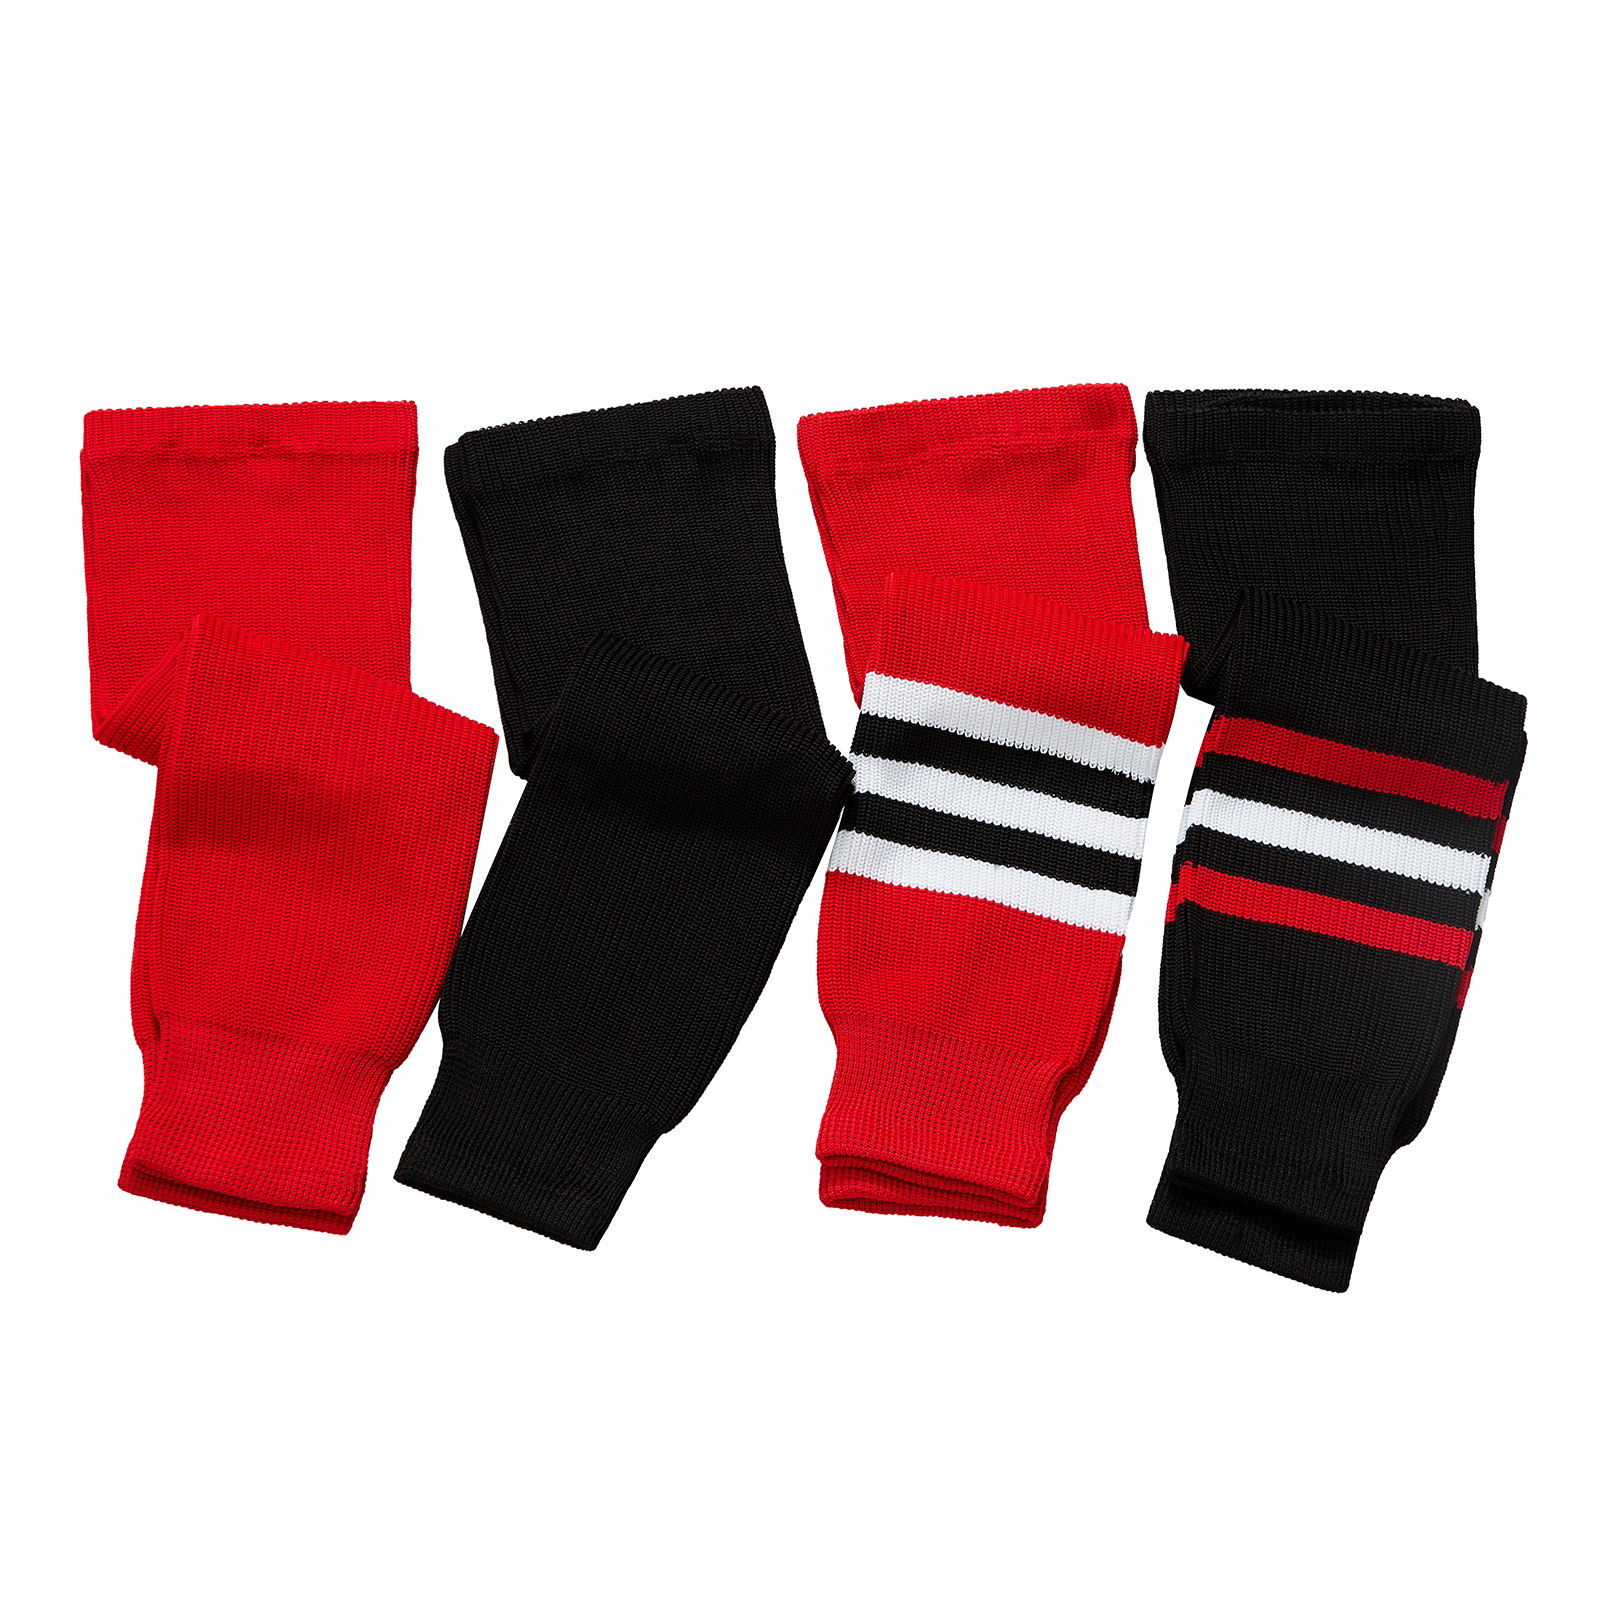 EALER HSK Series Multiple Colors Knit Hockey Socks Junior To Senior 